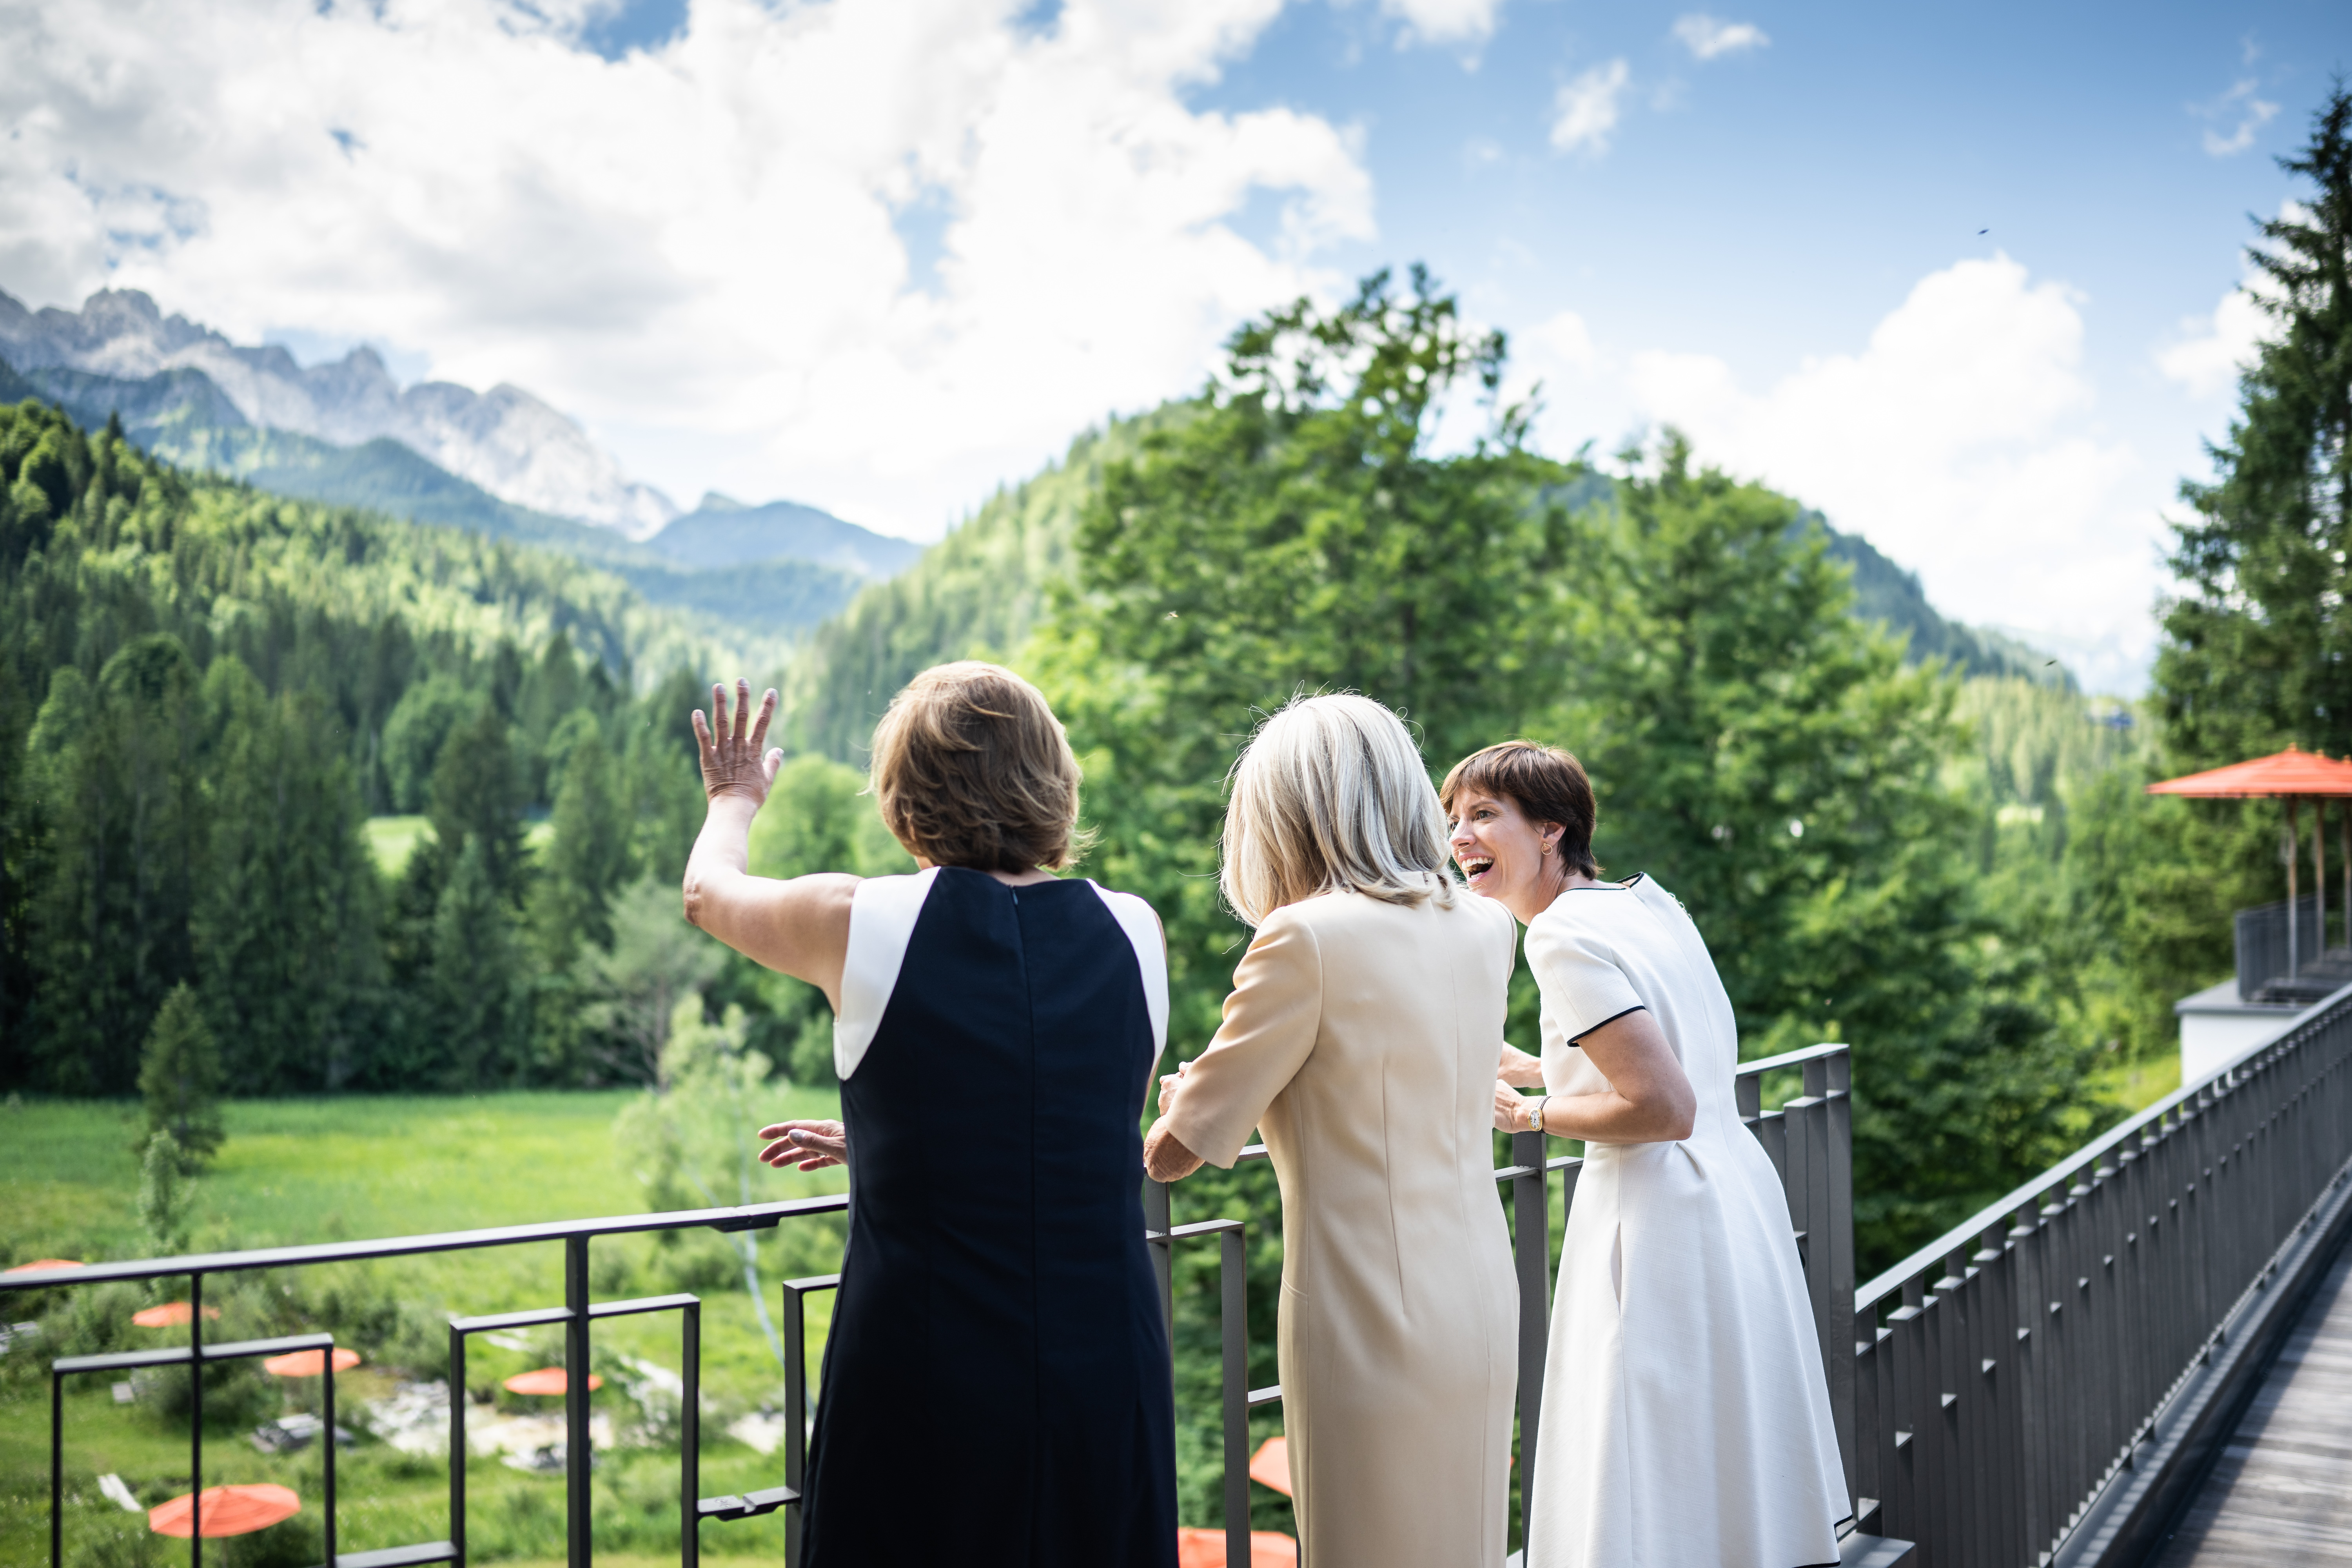 Before lunch at Schloss Elmau, Britta Ernst (at left) shows Brigitte Macron (centre) and Amélie Derbaudrenghien the view of the Wettersteingebirge.